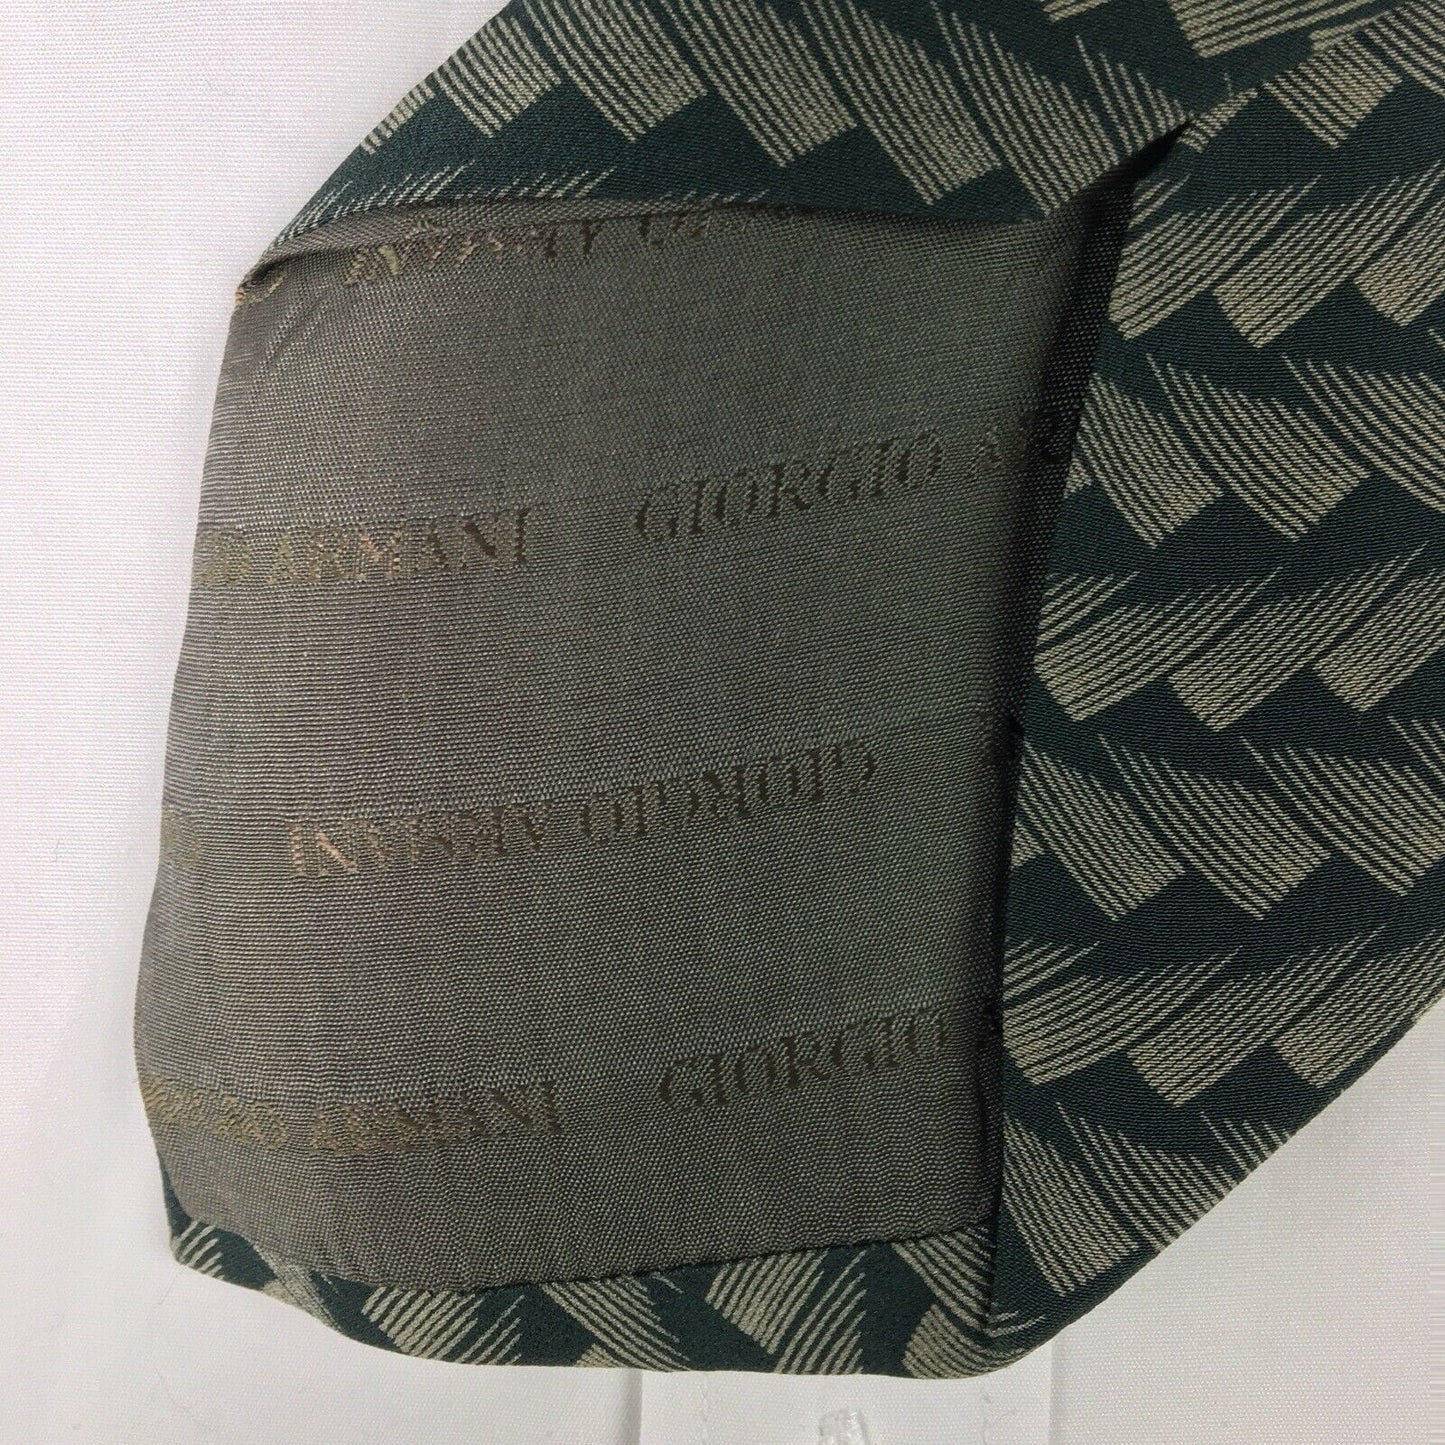 GIORGIO ARMANI Mens Cravatte Green Brushstroke Print 100% Italian Silk Neck Tie 56”